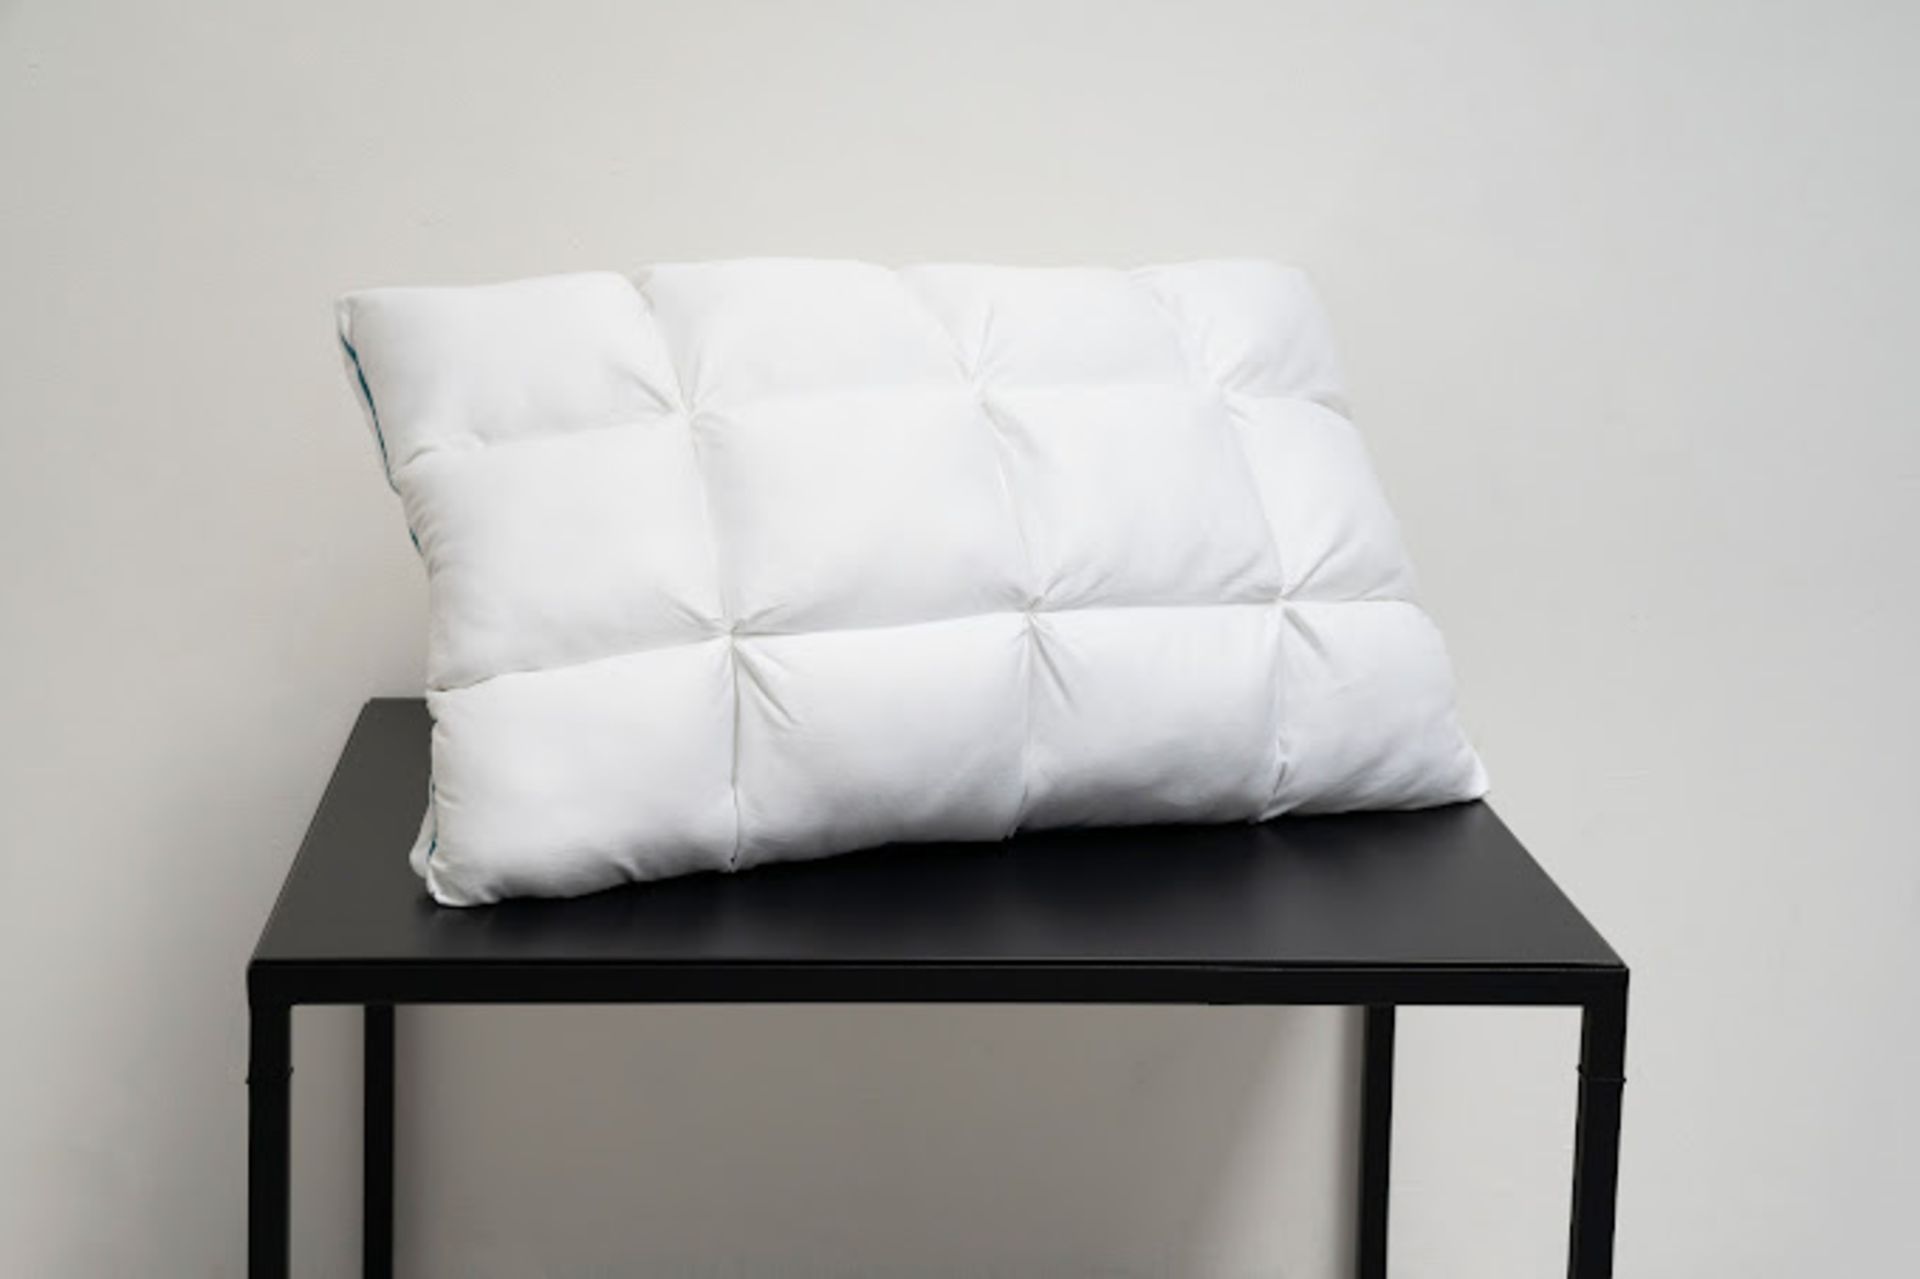 2 x ComfaSleep PL0001 Pillows - Bild 6 aus 18